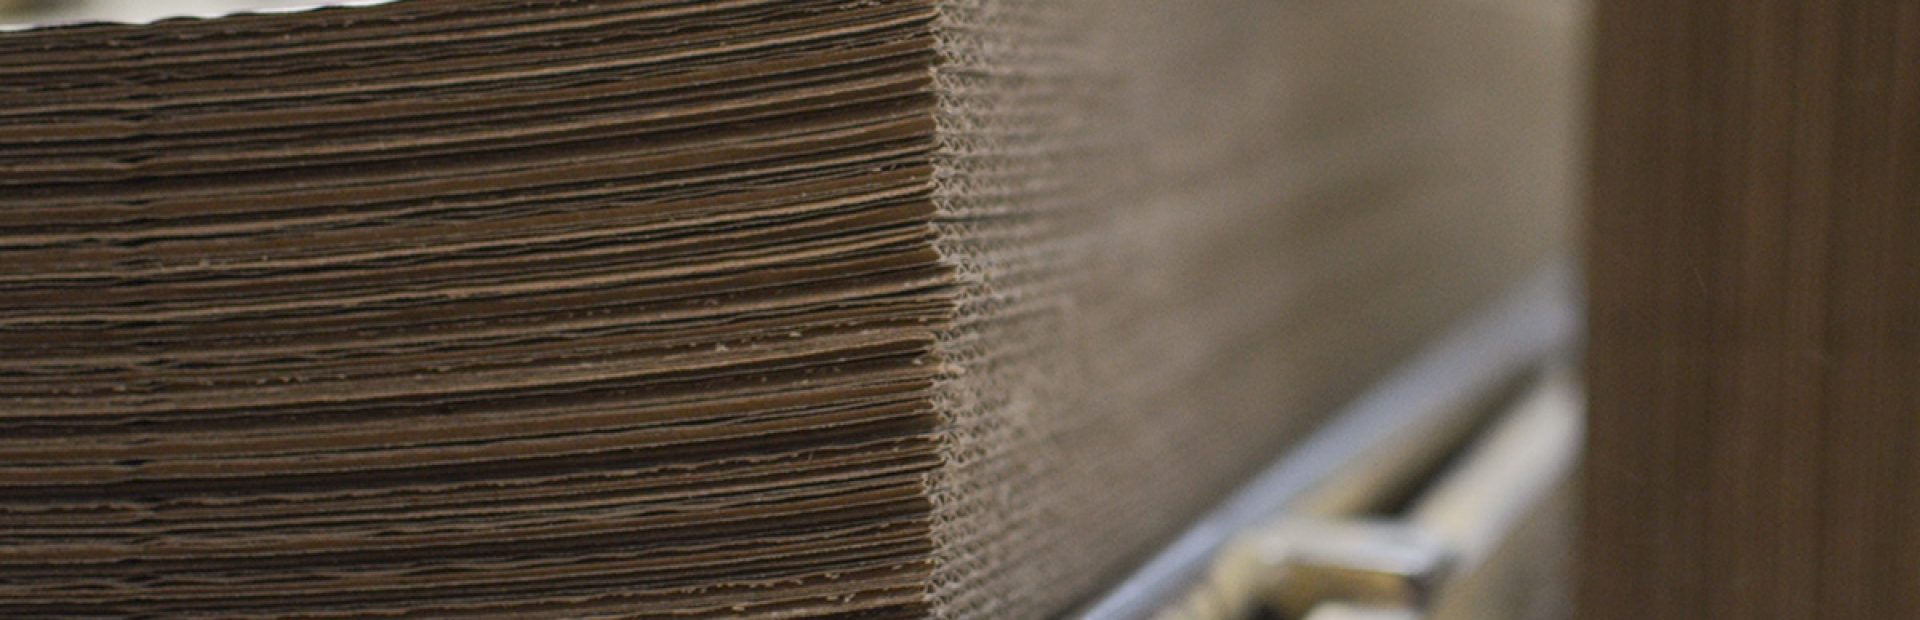 Reciclagem do papelão ondulado: por que ela é tão importante?